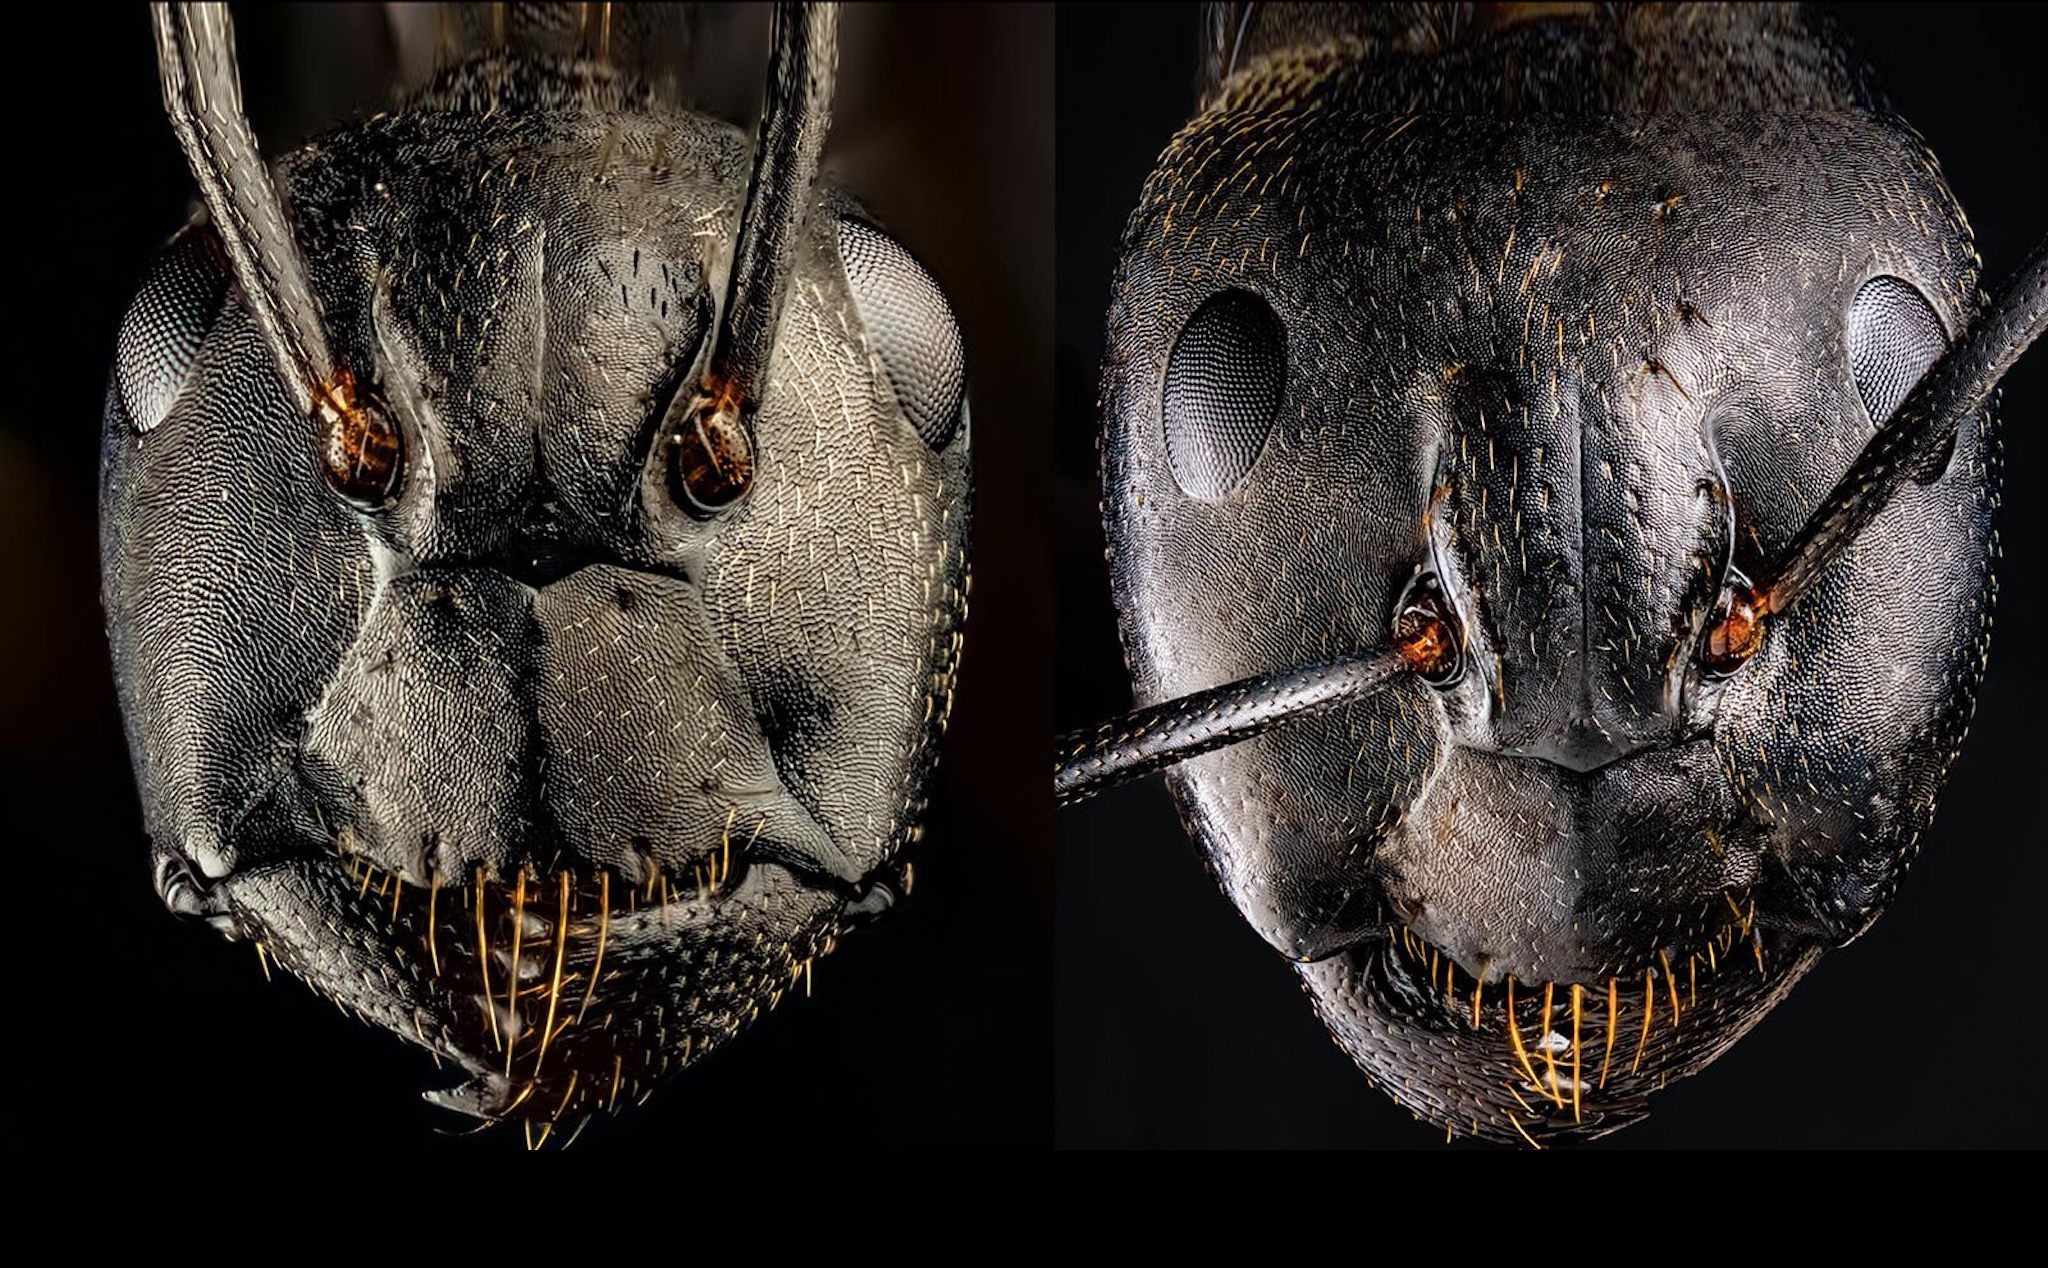 Không phải là quái vật, đây là ảnh chụp macro khuôn mặt của những chú kiến